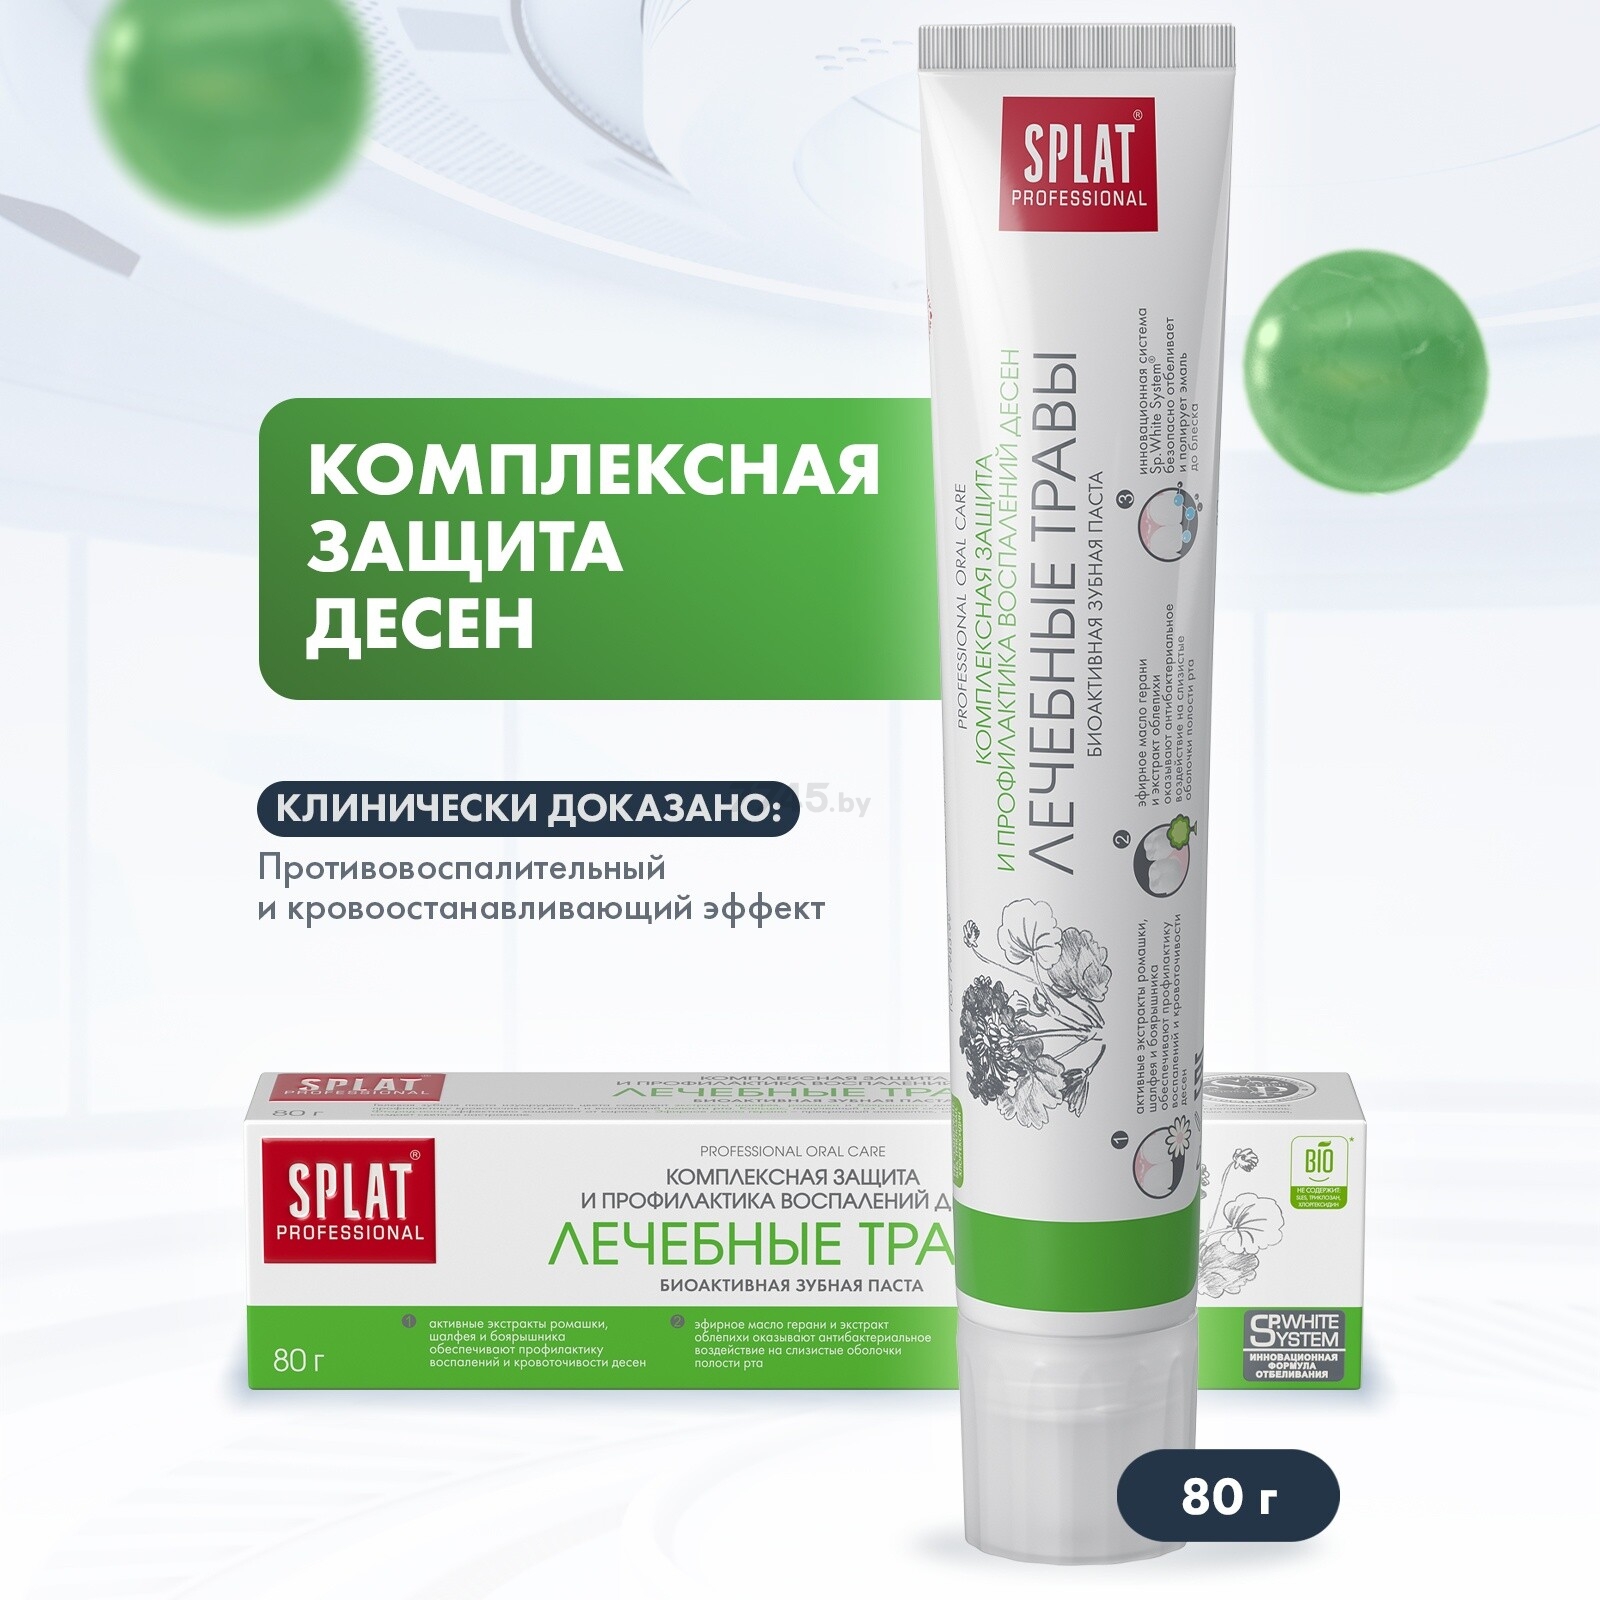 Зубная паста SPLAT Professional Лечебные травы 80 г (9591050943) купить в  Минске — цены в интернет-магазине